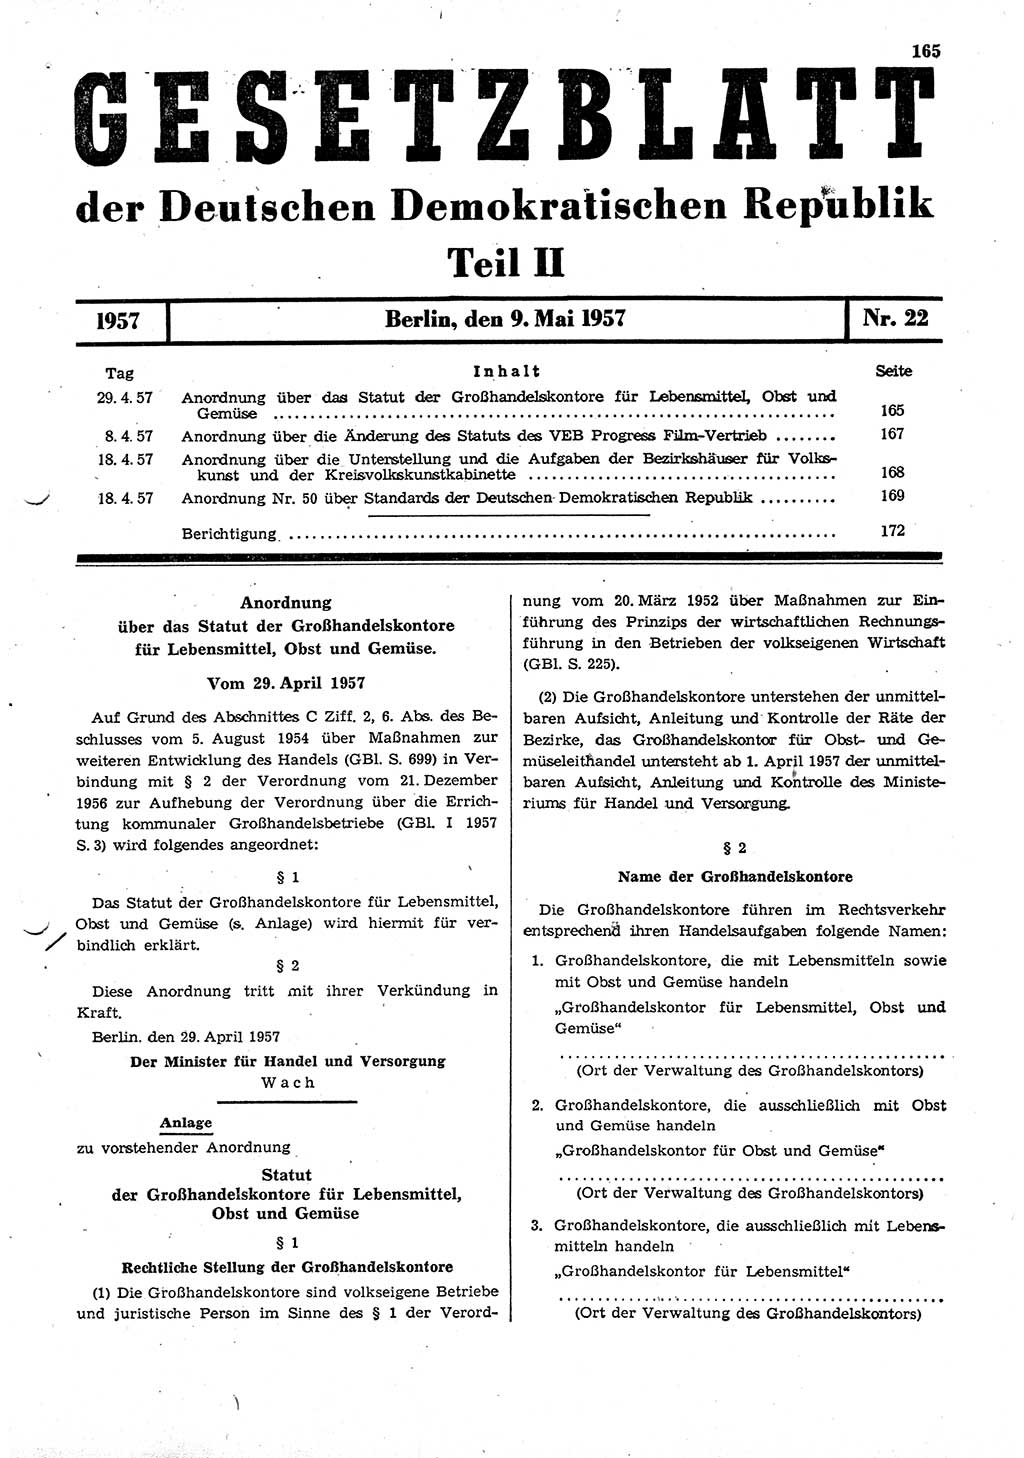 Gesetzblatt (GBl.) der Deutschen Demokratischen Republik (DDR) Teil ⅠⅠ 1957, Seite 165 (GBl. DDR ⅠⅠ 1957, S. 165)